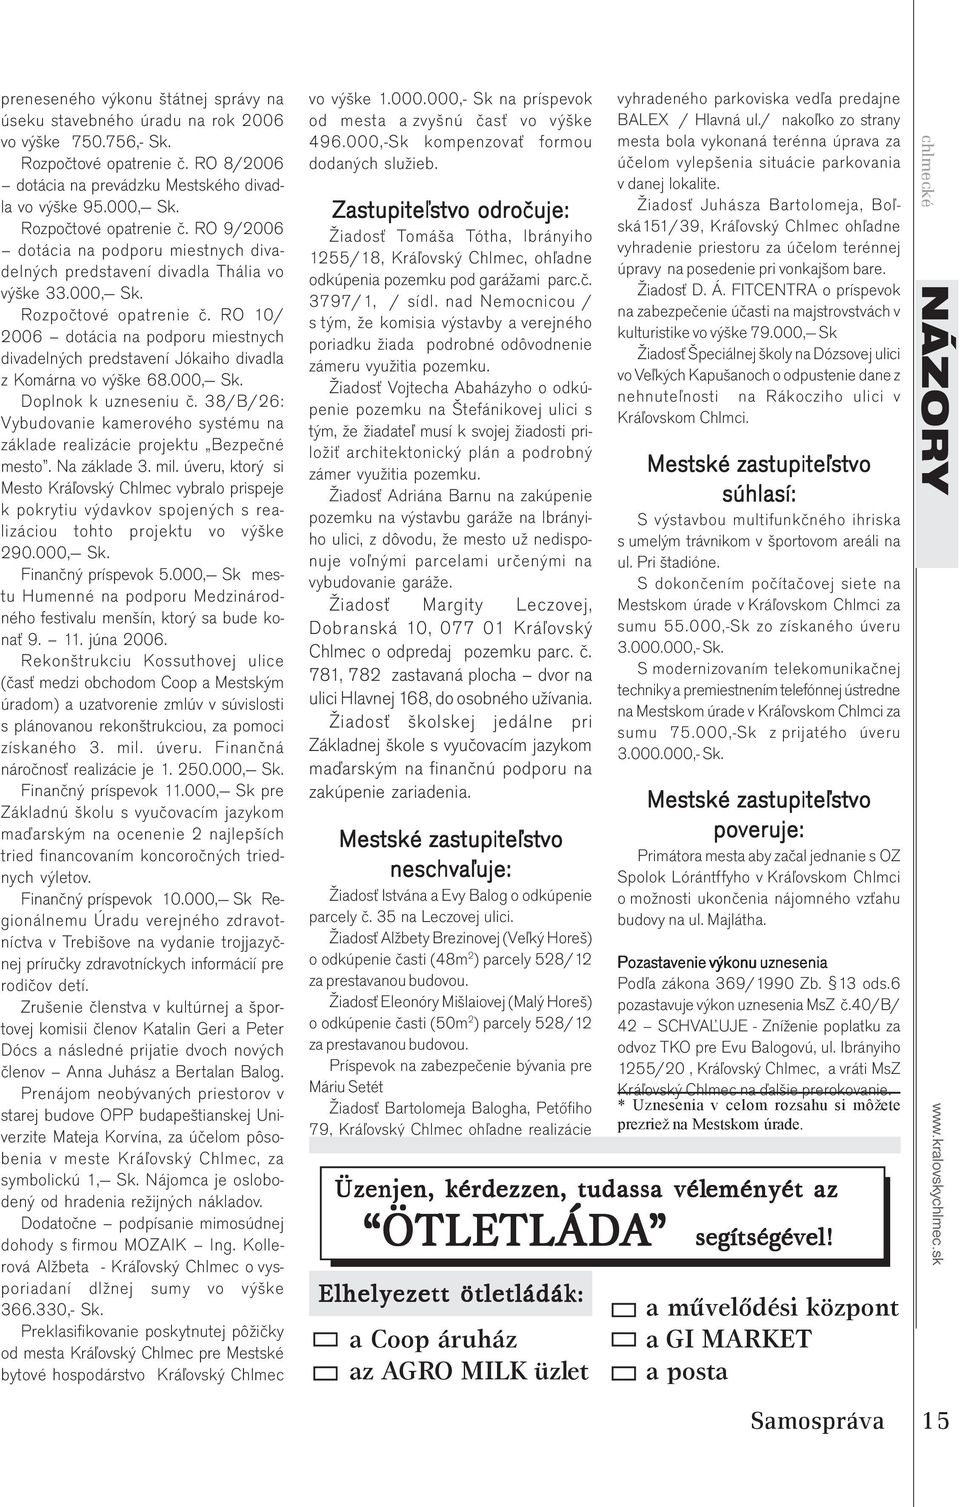 RO 10/ 2006 dotácia na podporu miestnych divadelných predstavení Jókaiho divadla z Komárna vo výške 68.000, Sk. Doplnok k uzneseniu č.